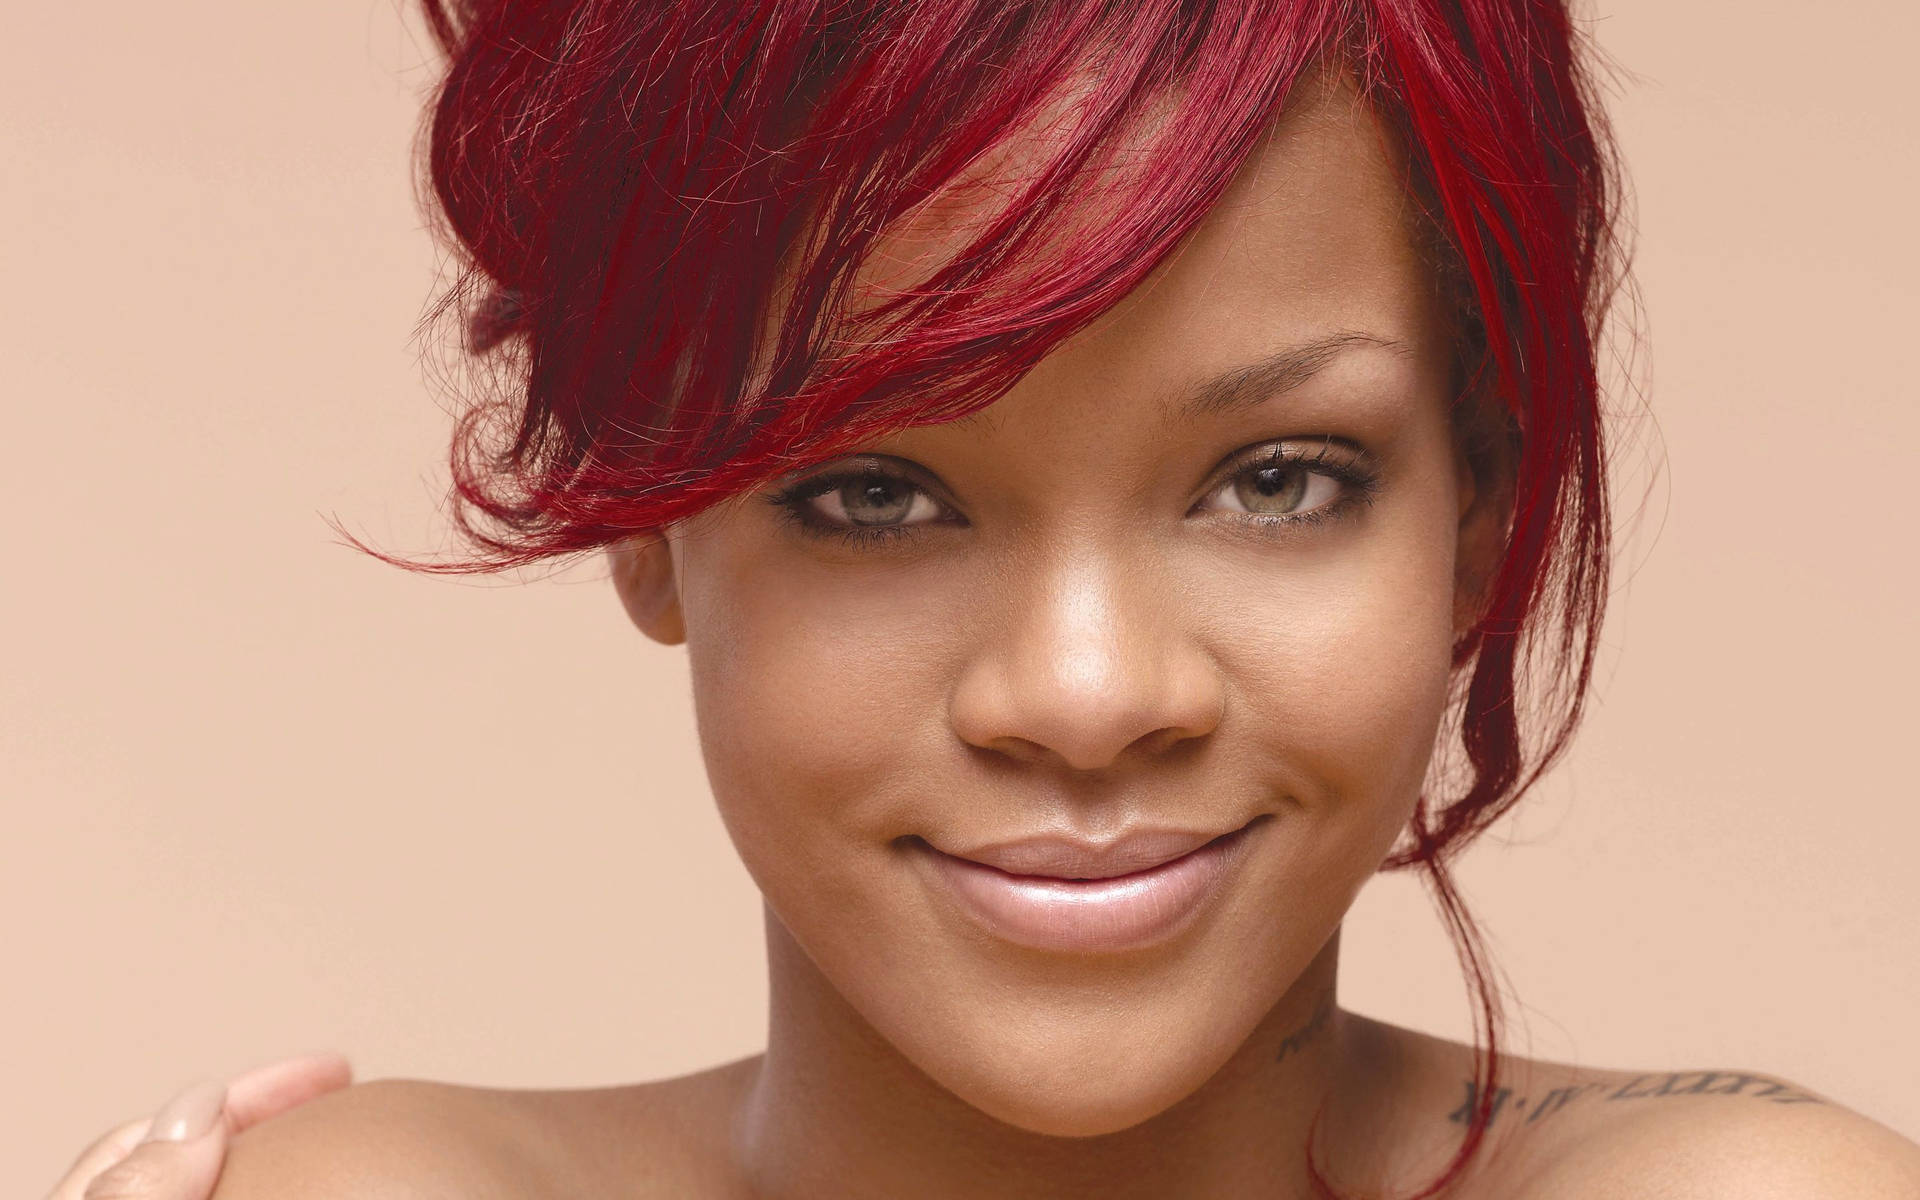 Smiling Rihanna In Bare Skin